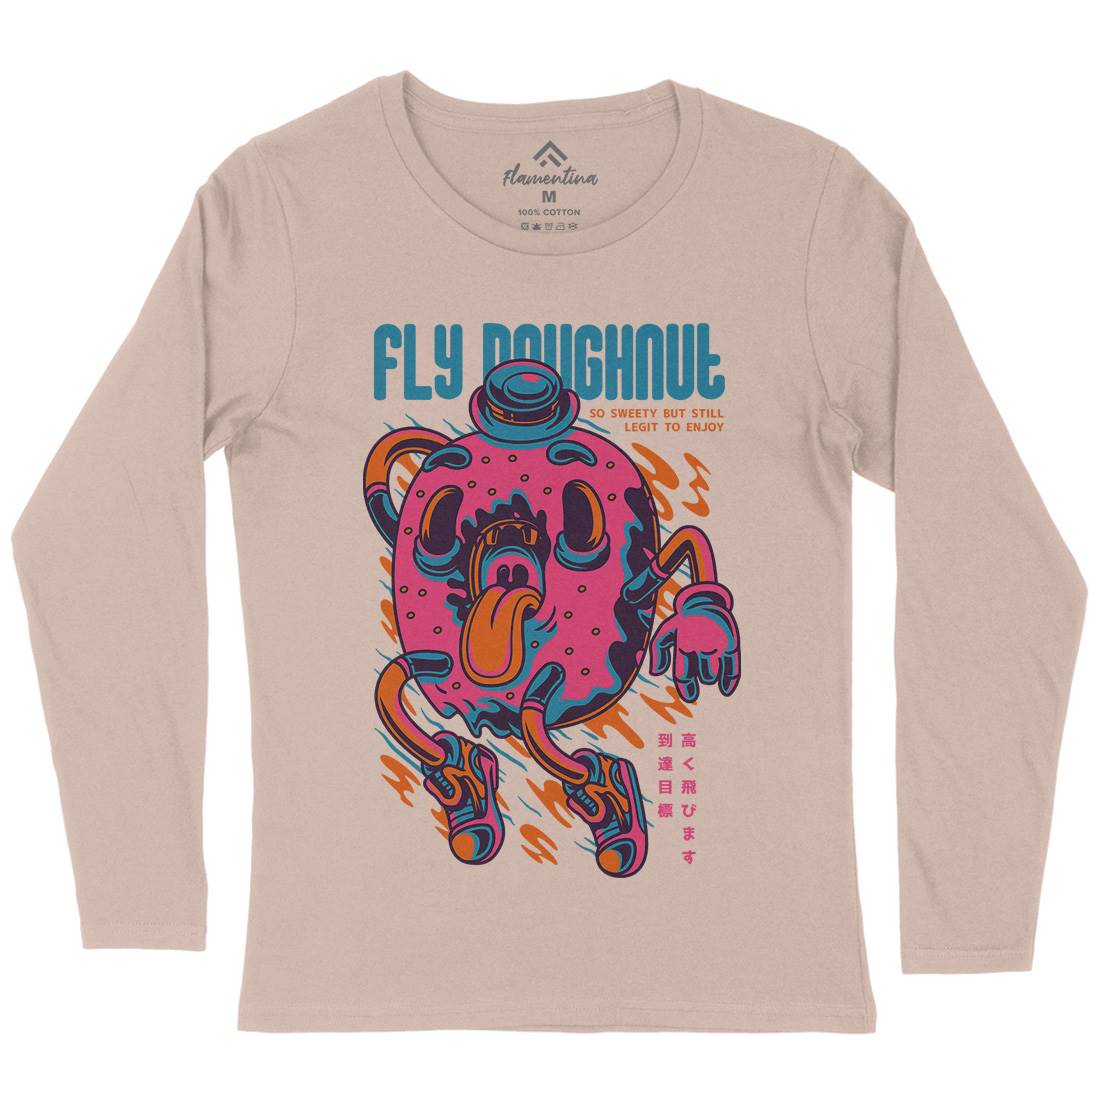 Fly Doughnut Womens Long Sleeve T-Shirt Food D777